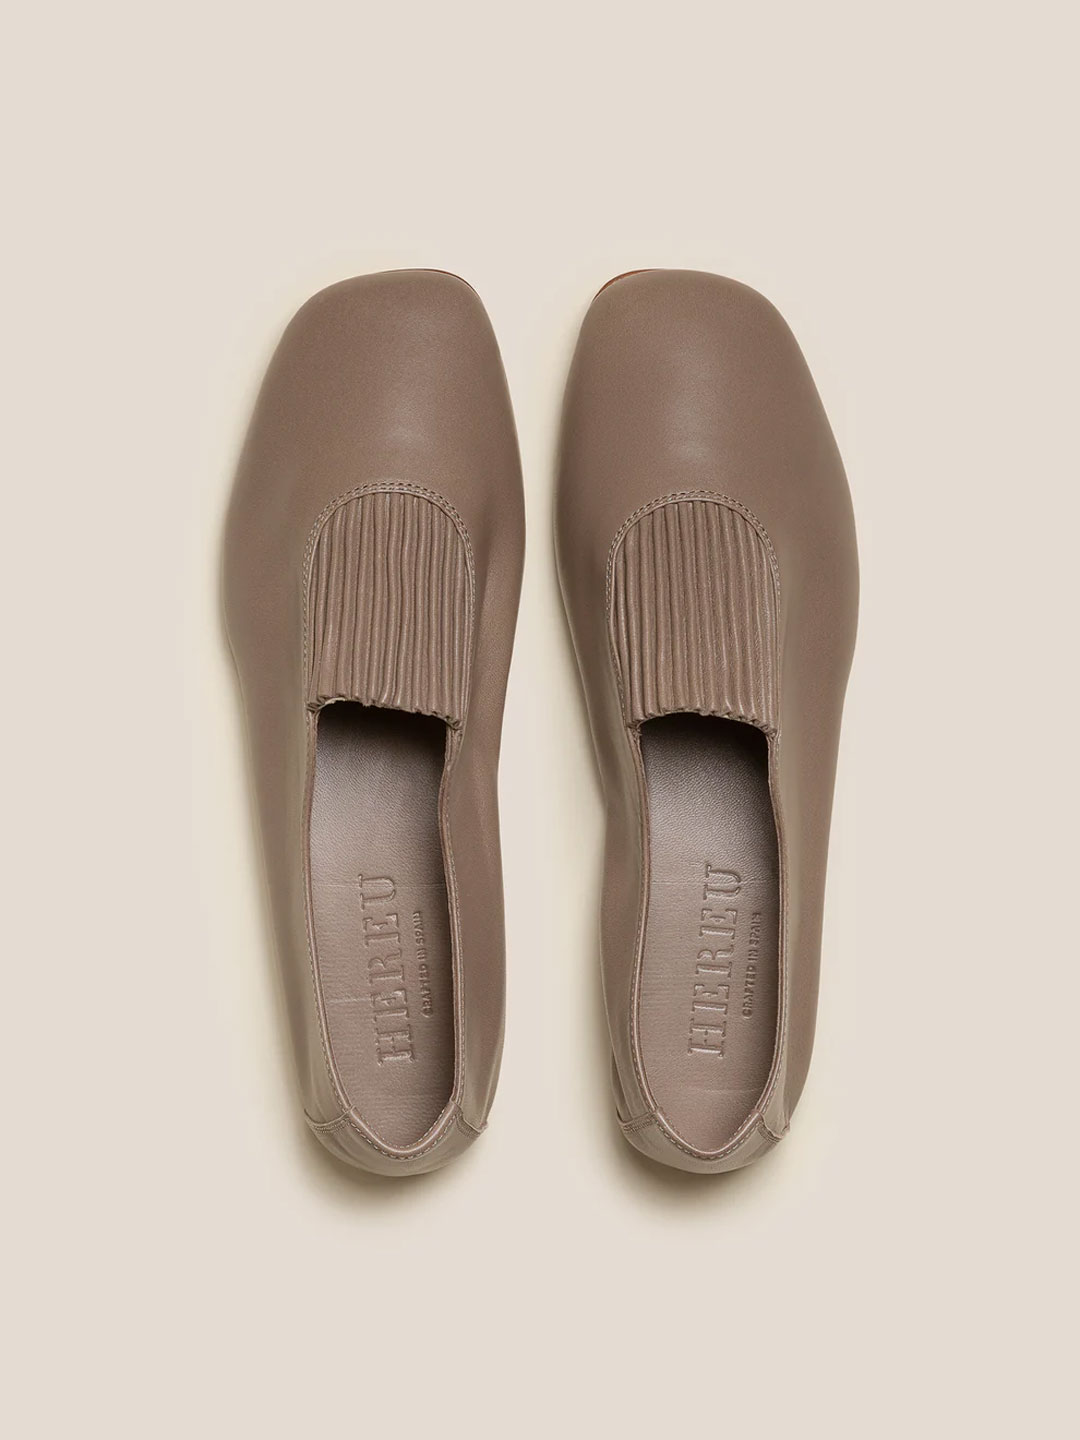 CAOMA - Elasticated Slip-on Shoe - Ash